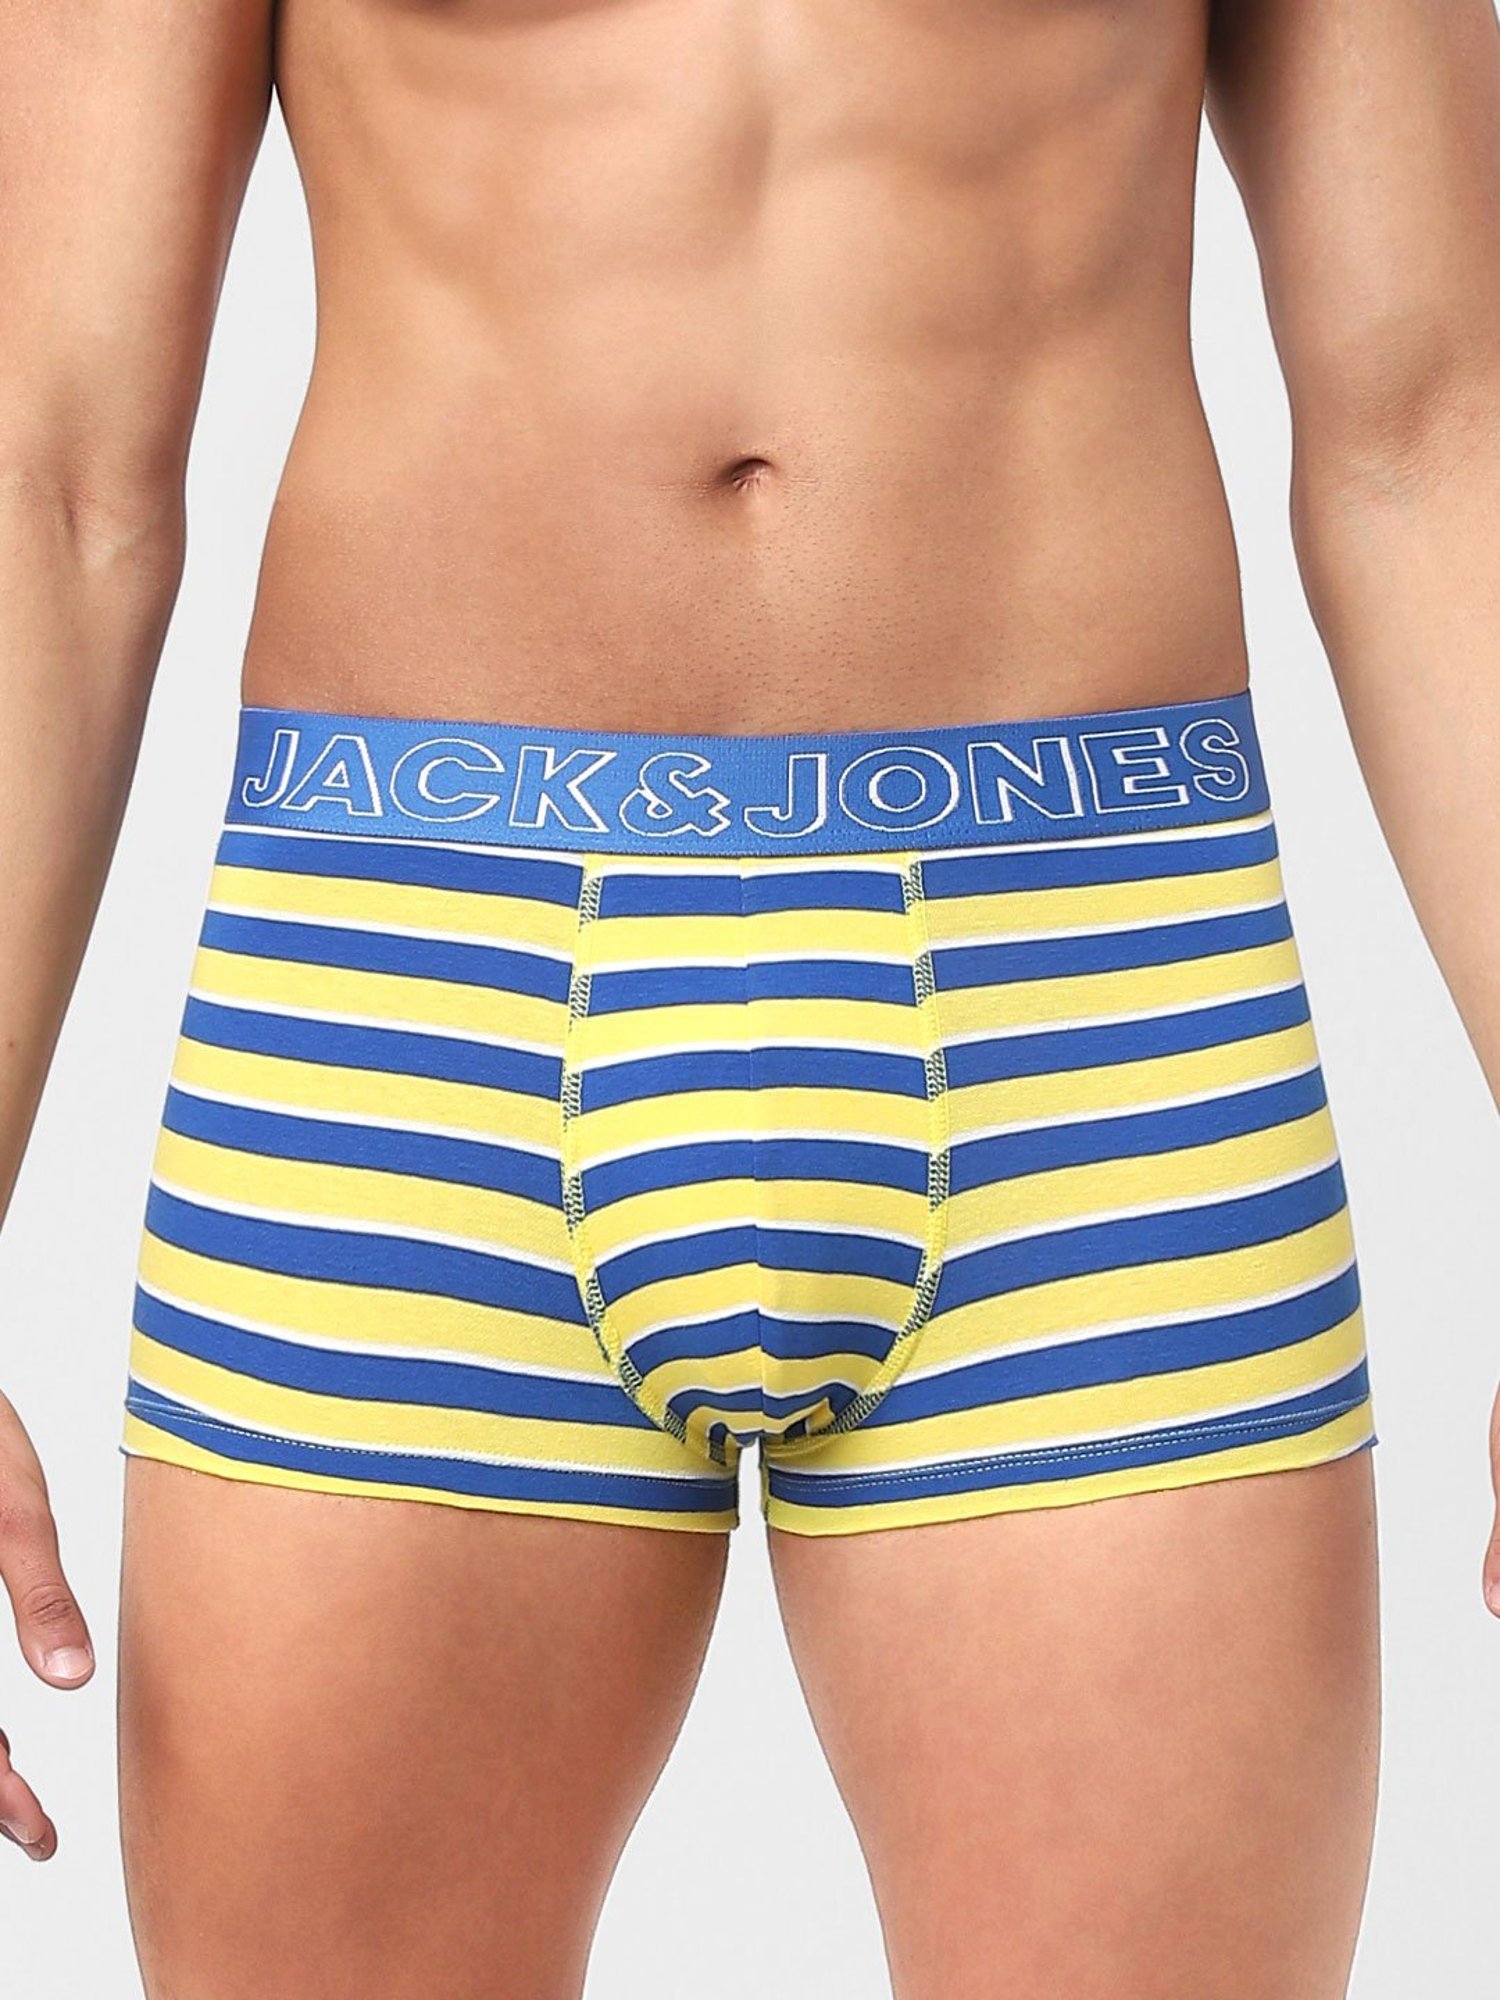 Buy Jack & Jones Lemon Yellow & Blue Striped Trunks for Men Online